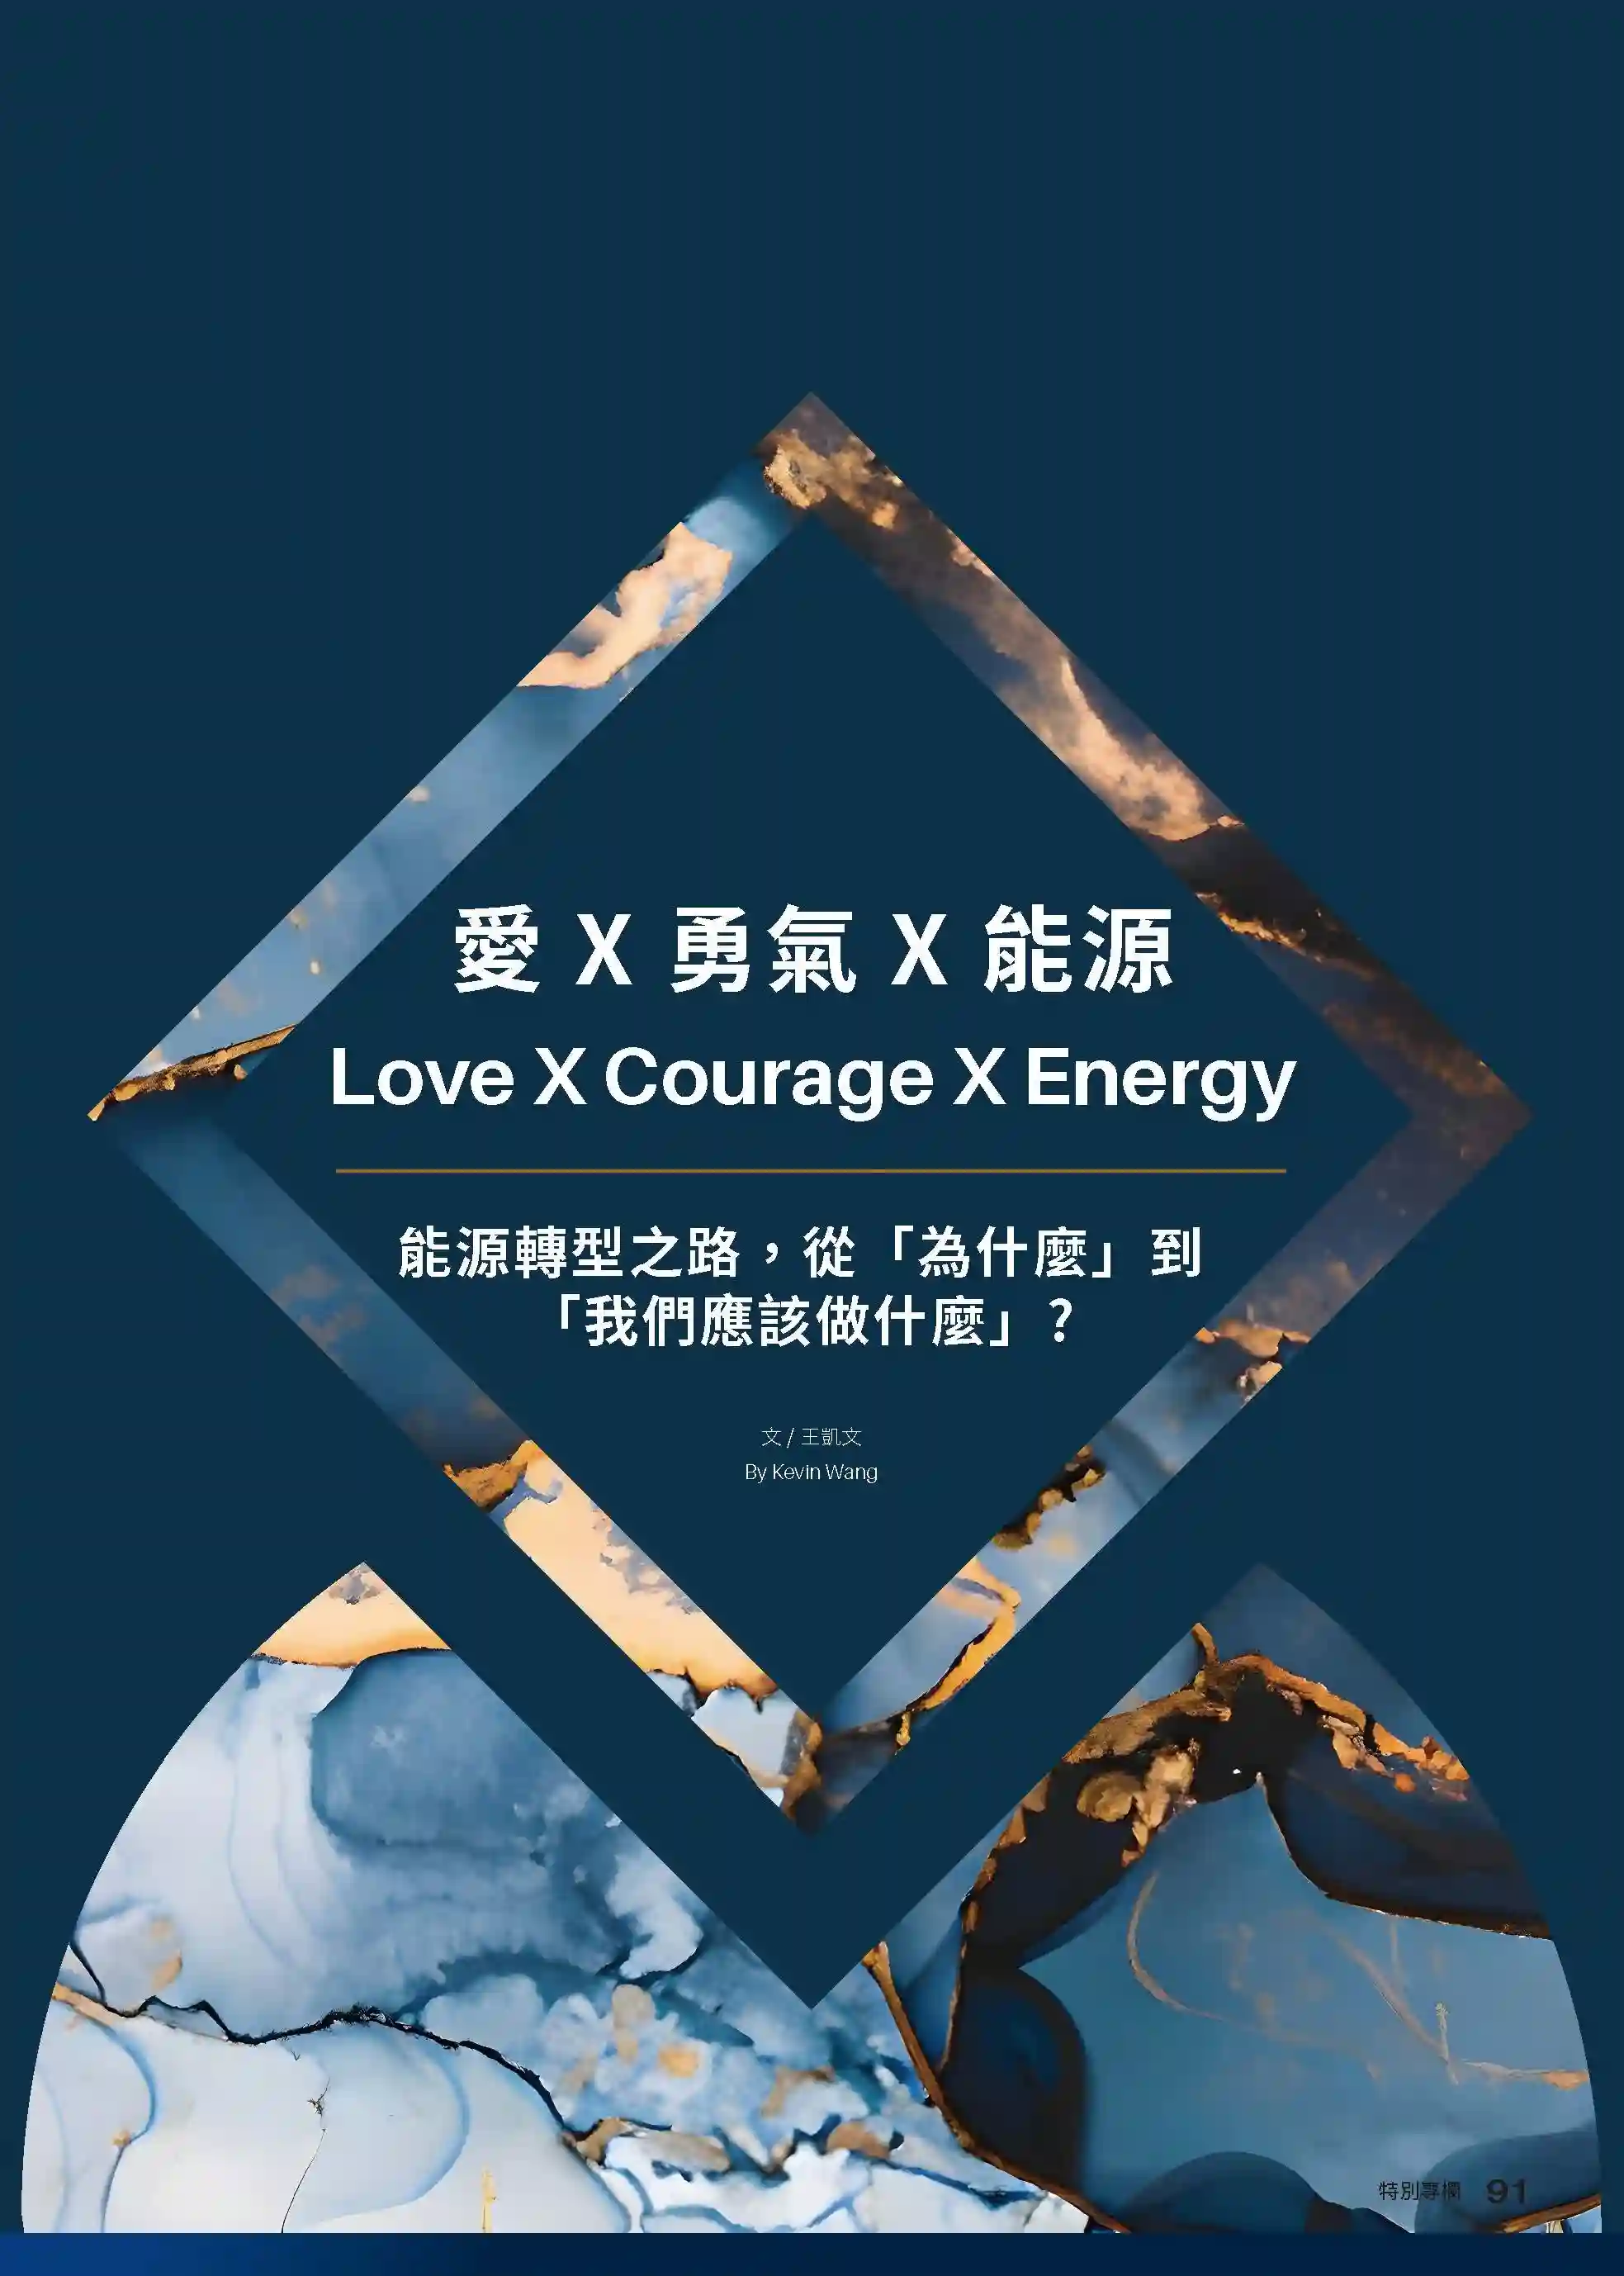 〔愛 x 勇氣 x 能源〕能源轉型之路，從「為什麼」到「我們應該做什麼」？